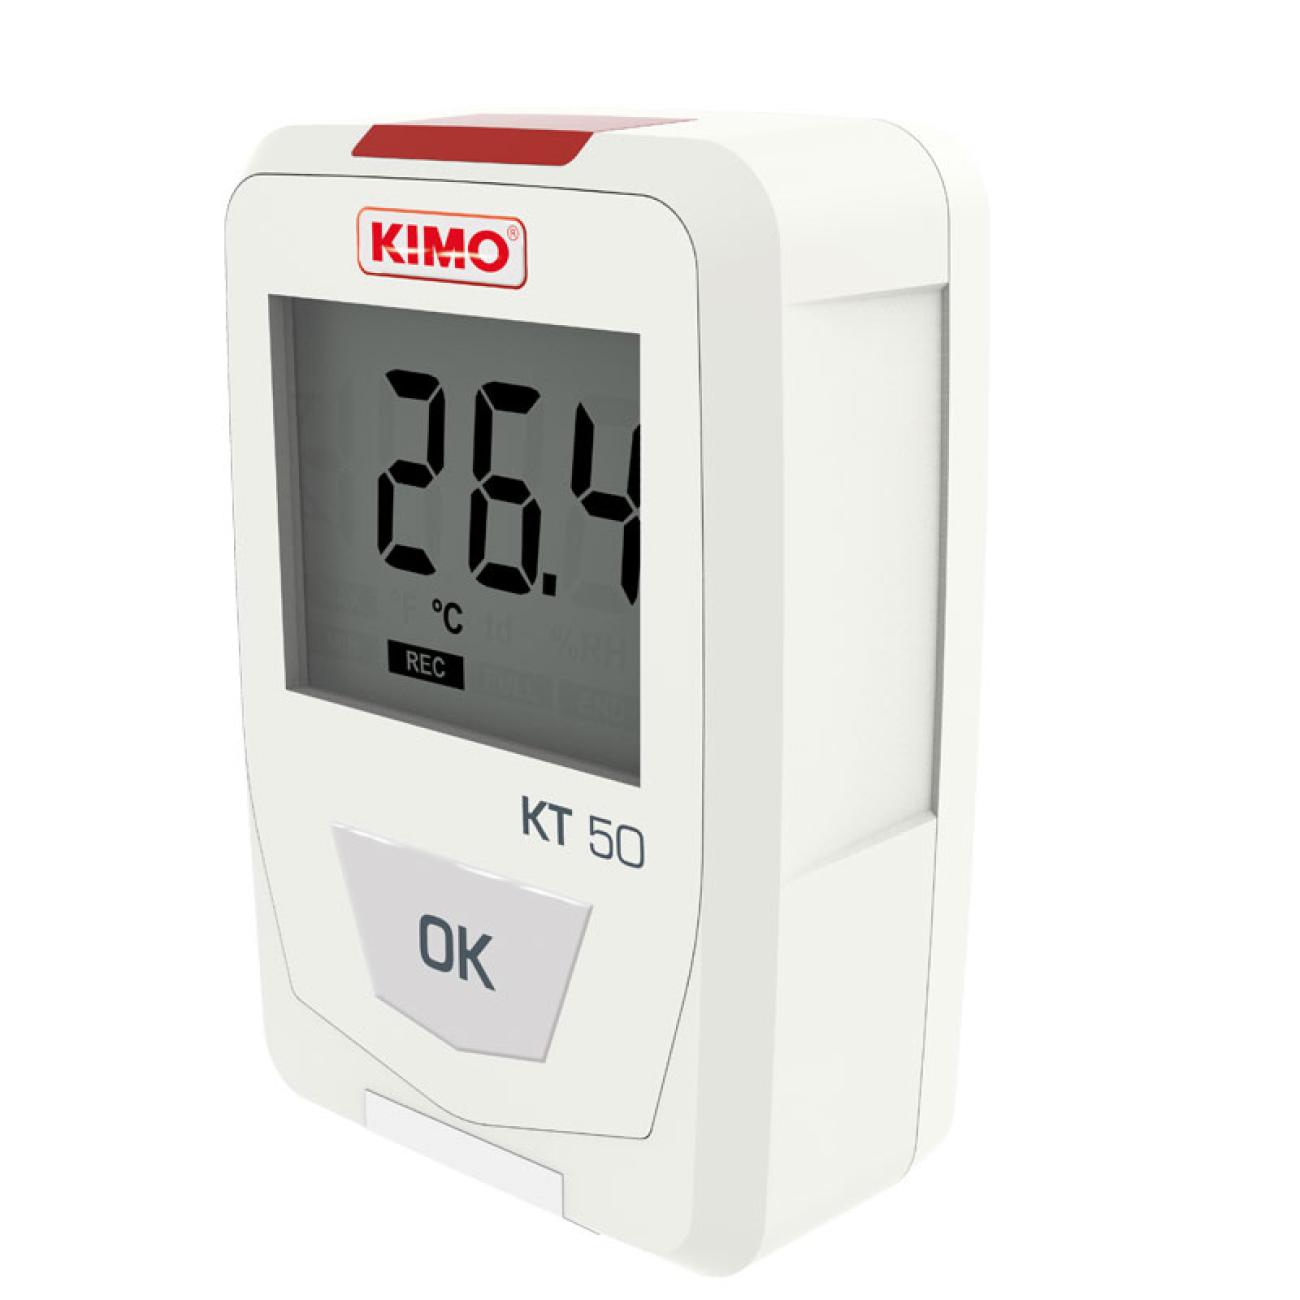 凯茂KIMO KH50温湿度记录仪KT50 迷你型电子式温度